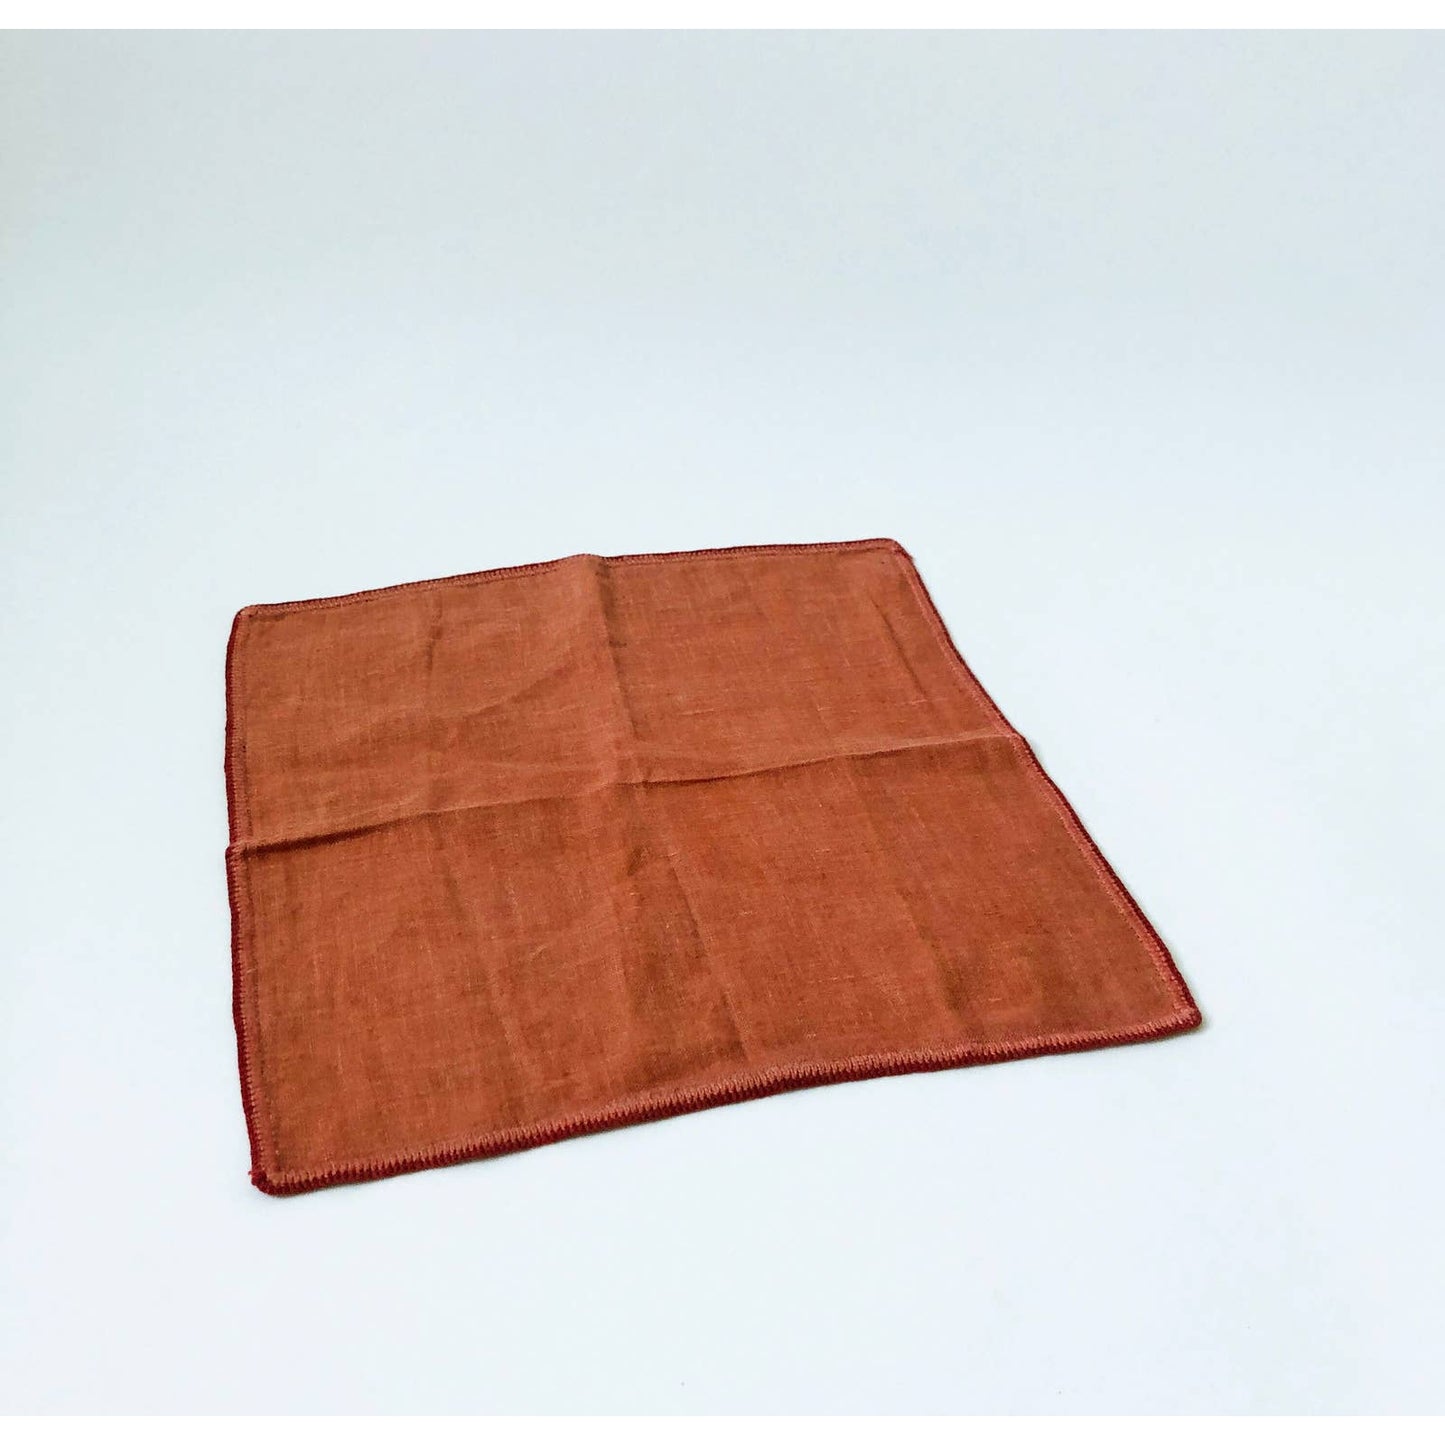 Vintage Linen Orange Red Edge Stitched Napkins - Set of 6